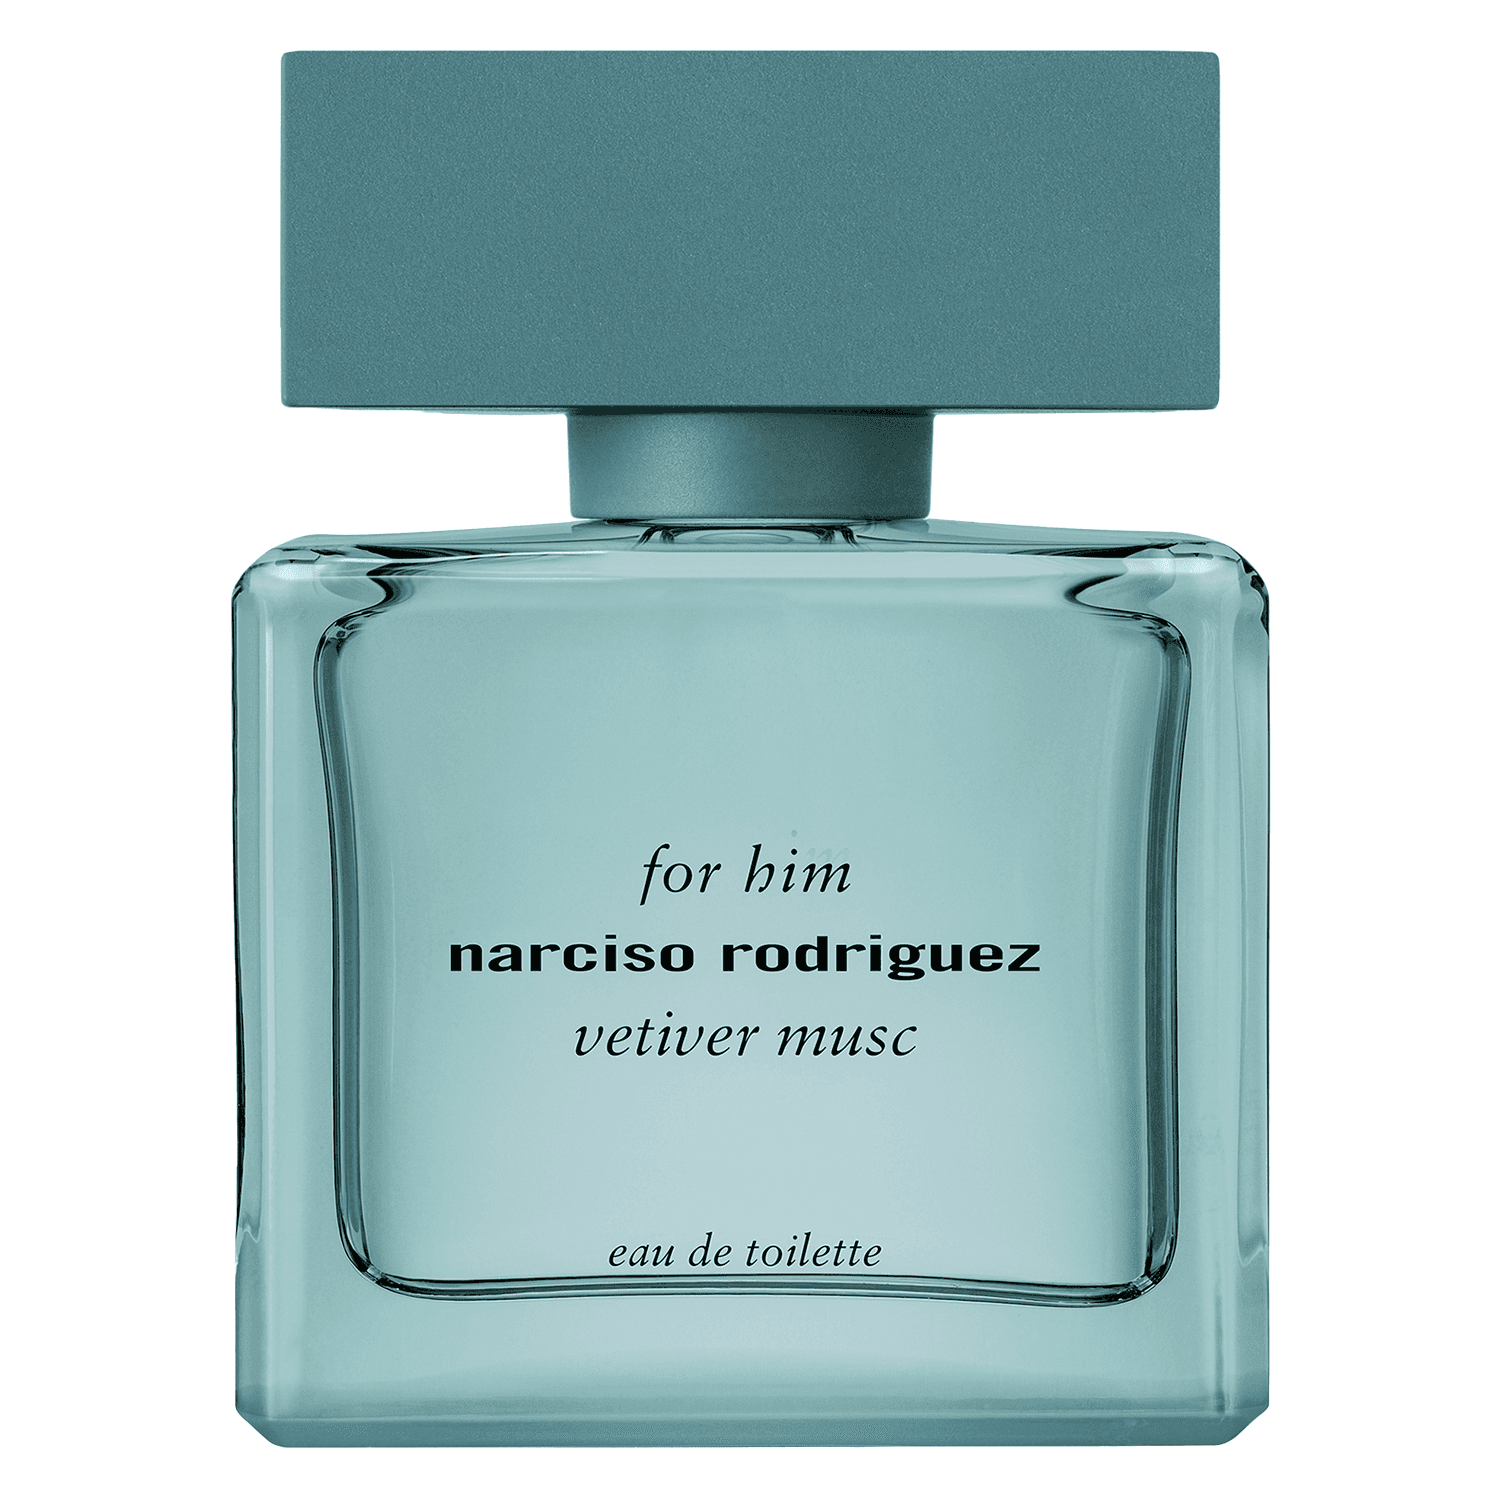 Narciso - For Him Vetiver Musc Eau de Toilette